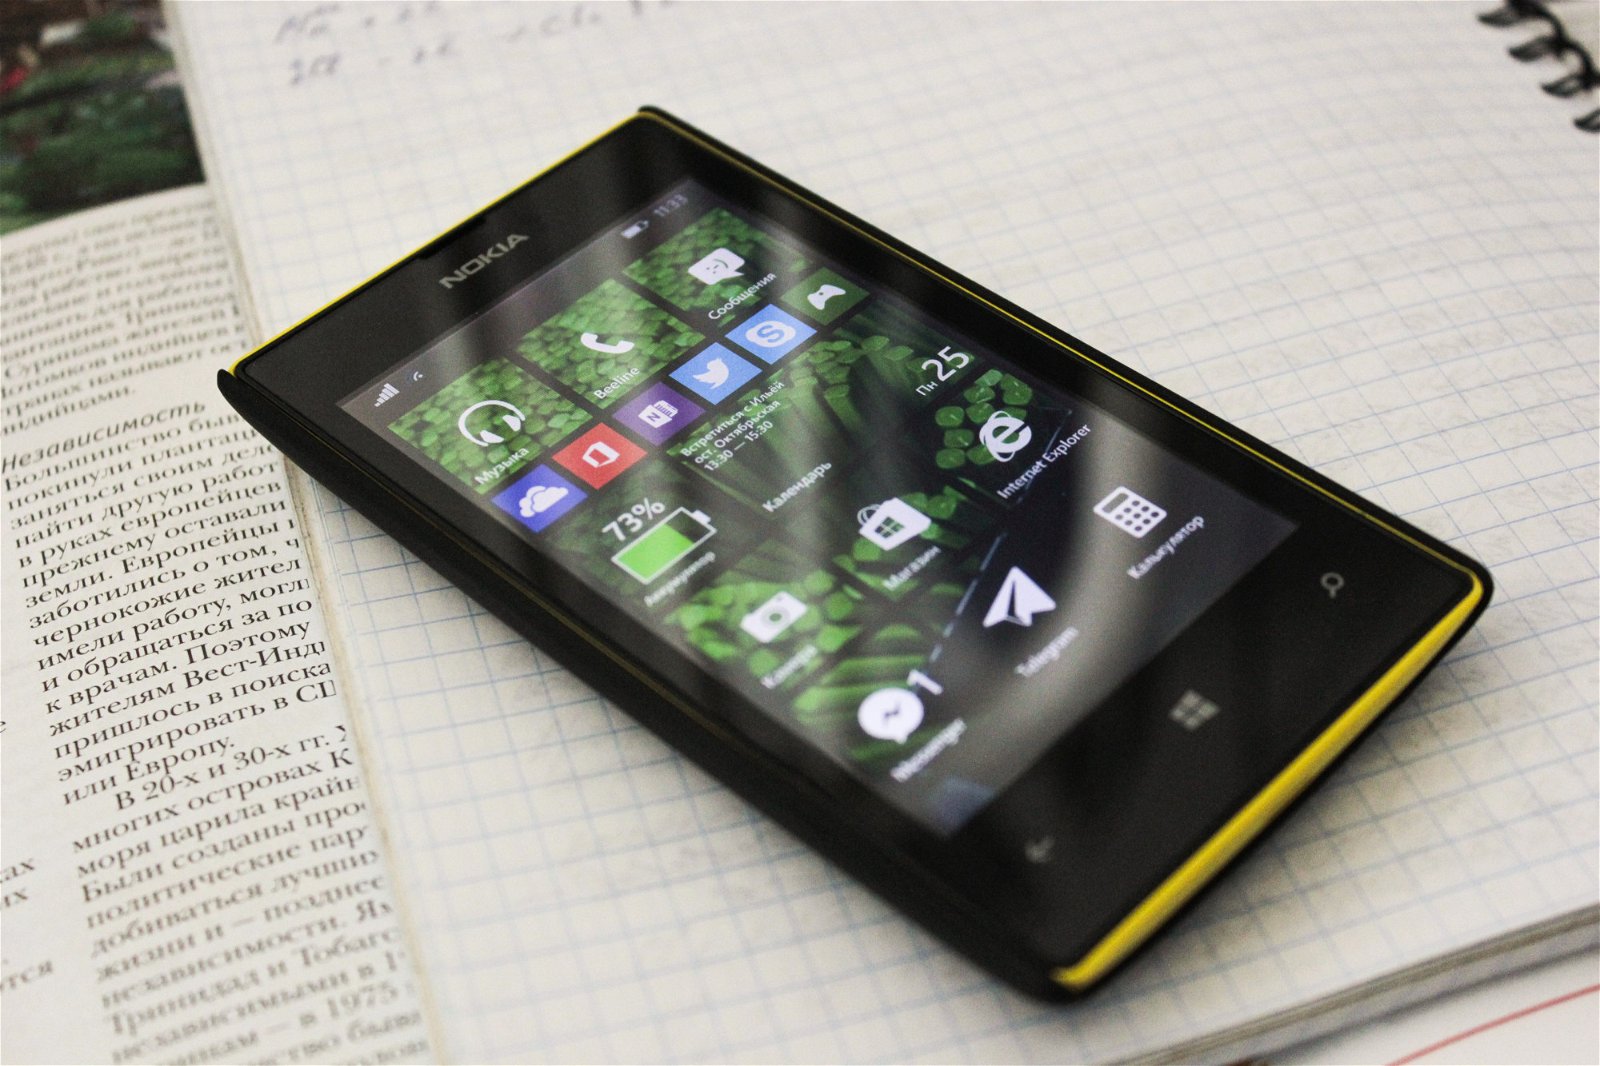 Immagine di Windows Phone sta per ricevere un'app che gli è sempre mancata, peccato sia morto 4 anni fa